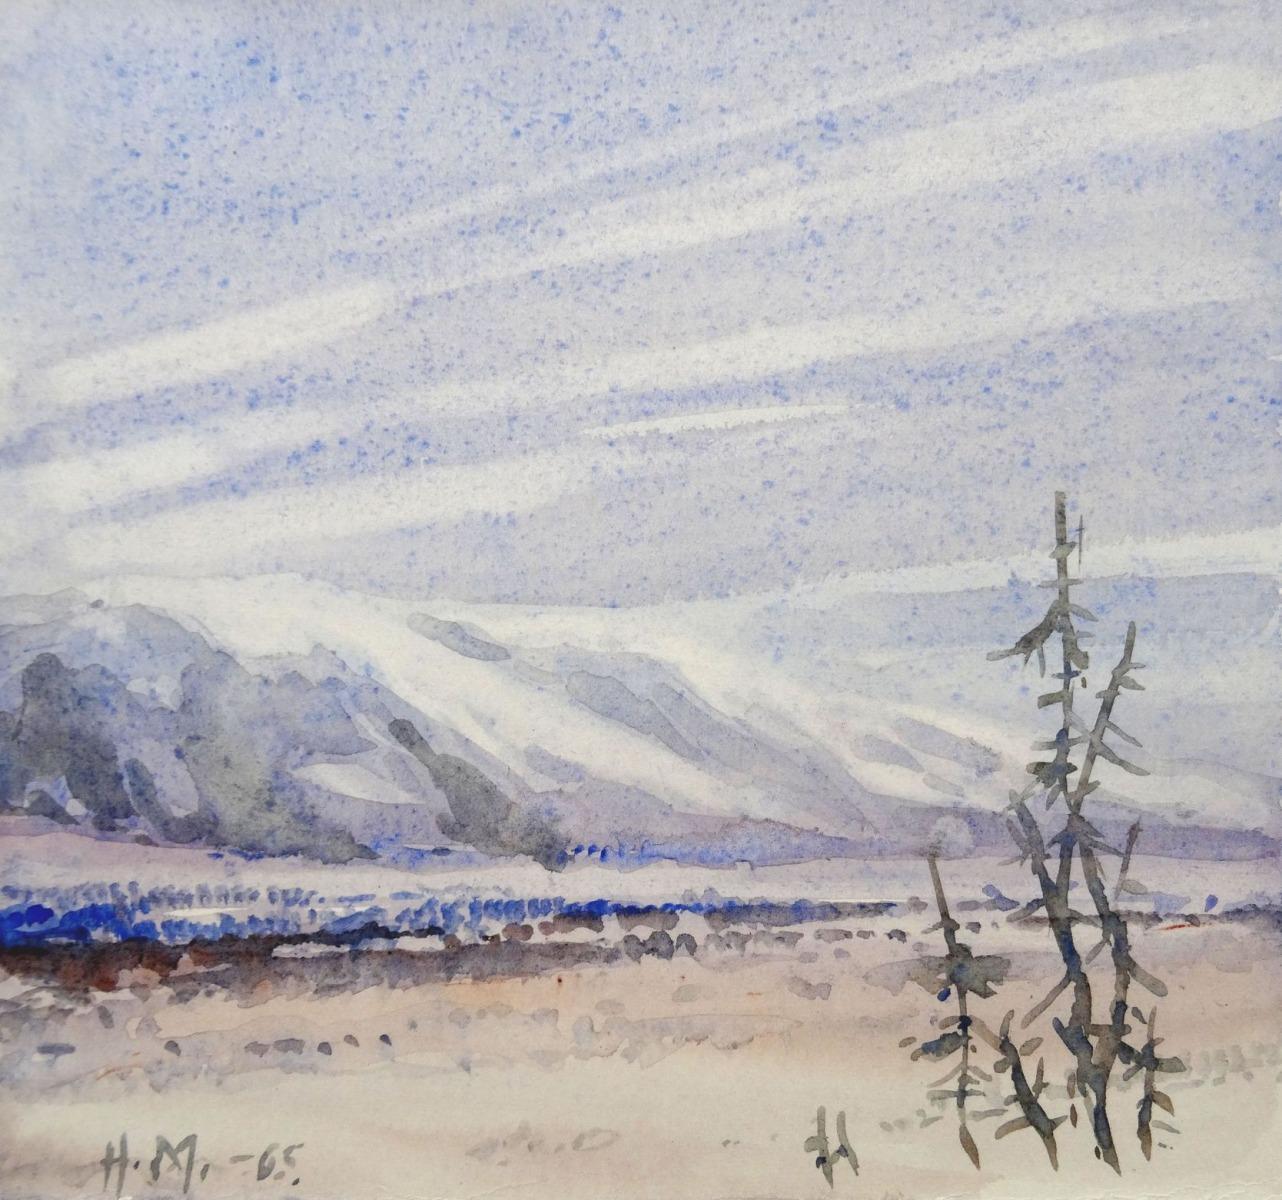 Herberts Mangolds Landscape Art - Landscape with mountains  1965, paper/watercolor, 17.5x18.5 cm